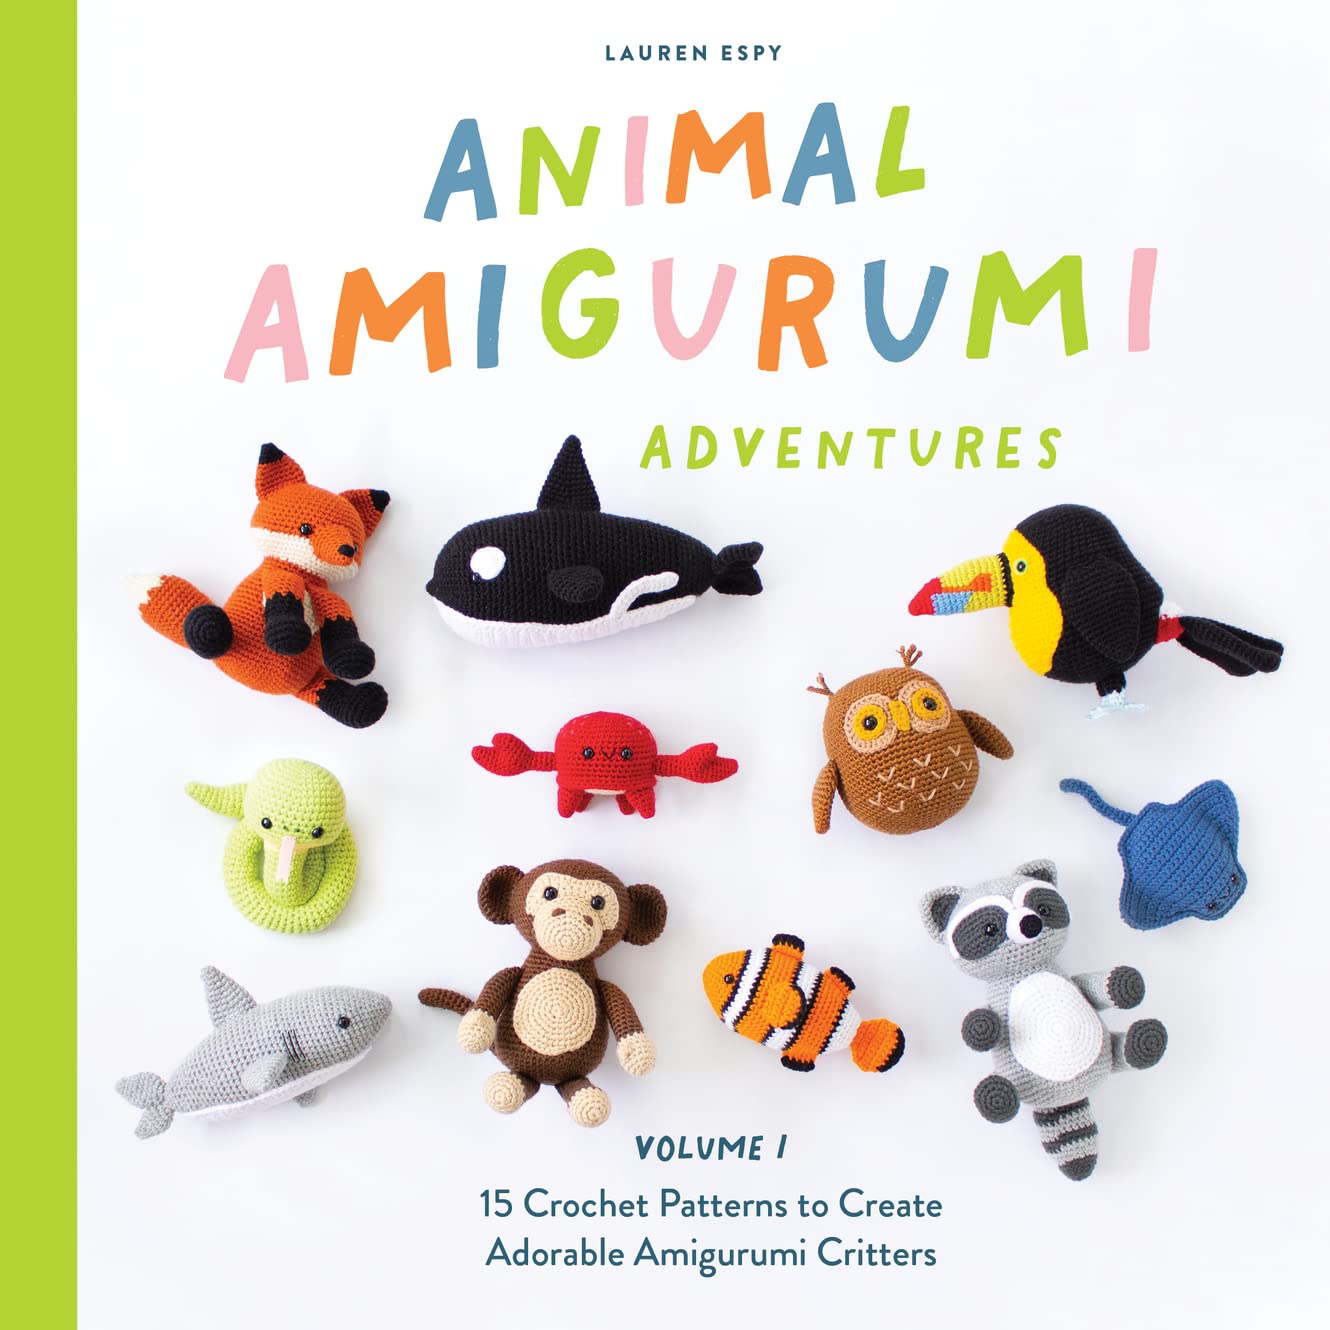 Animal Amiguirumi Adventures Volume 1 cover